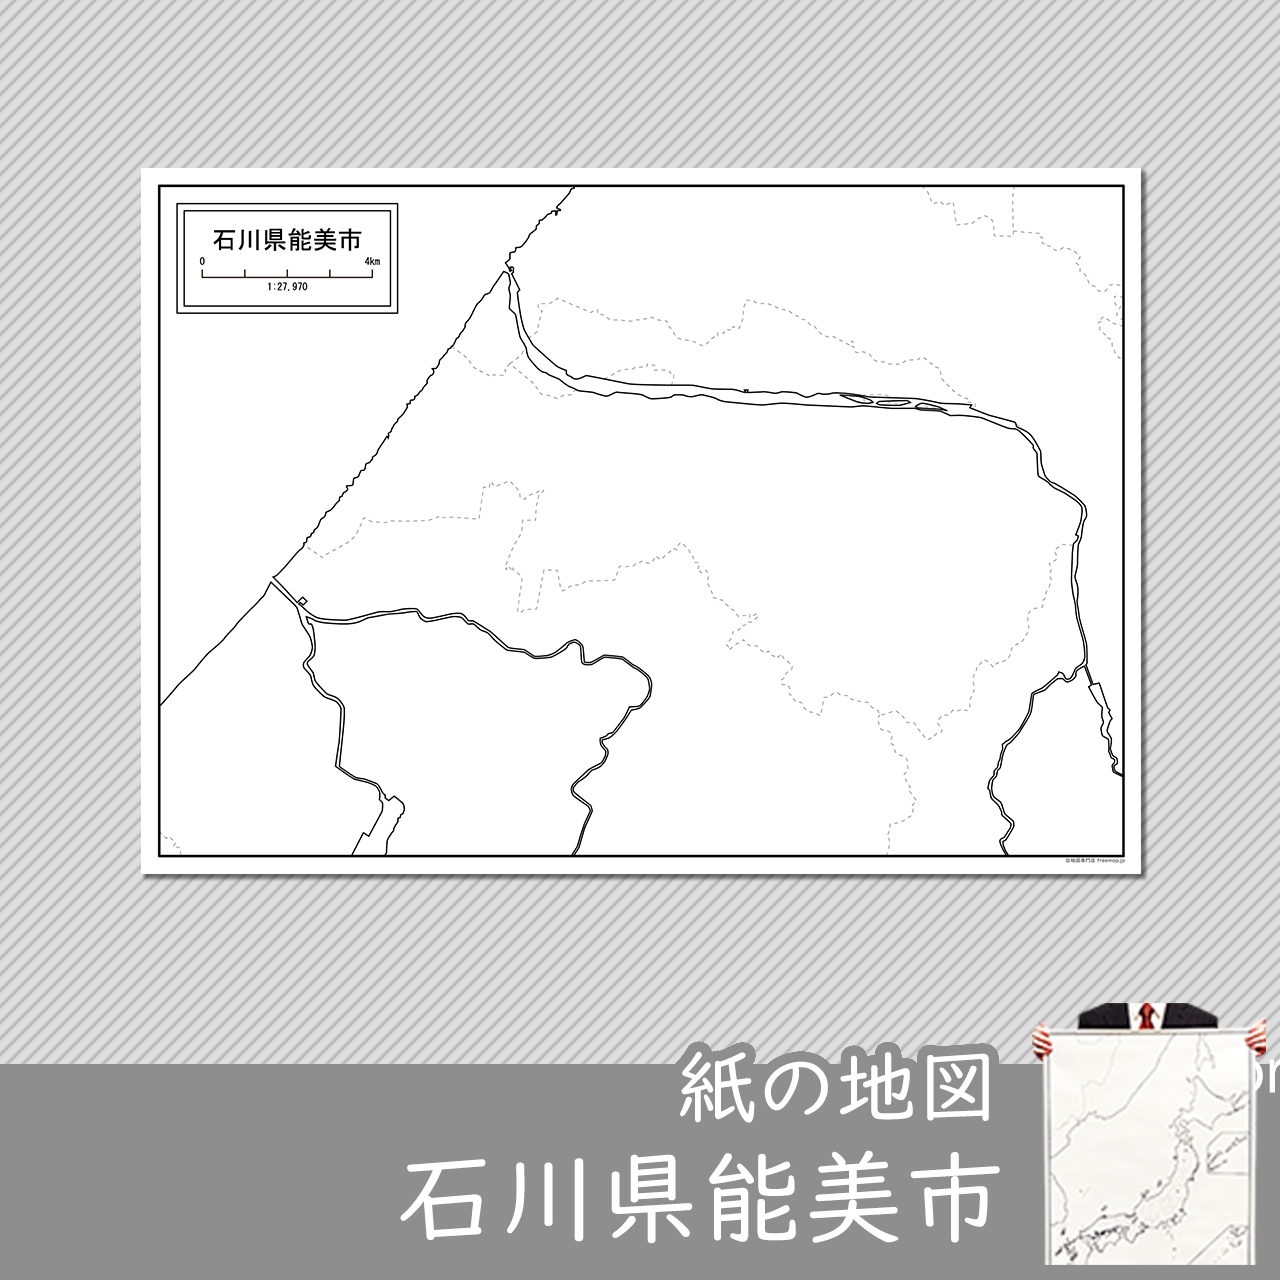 能美市の紙の白地図のサムネイル